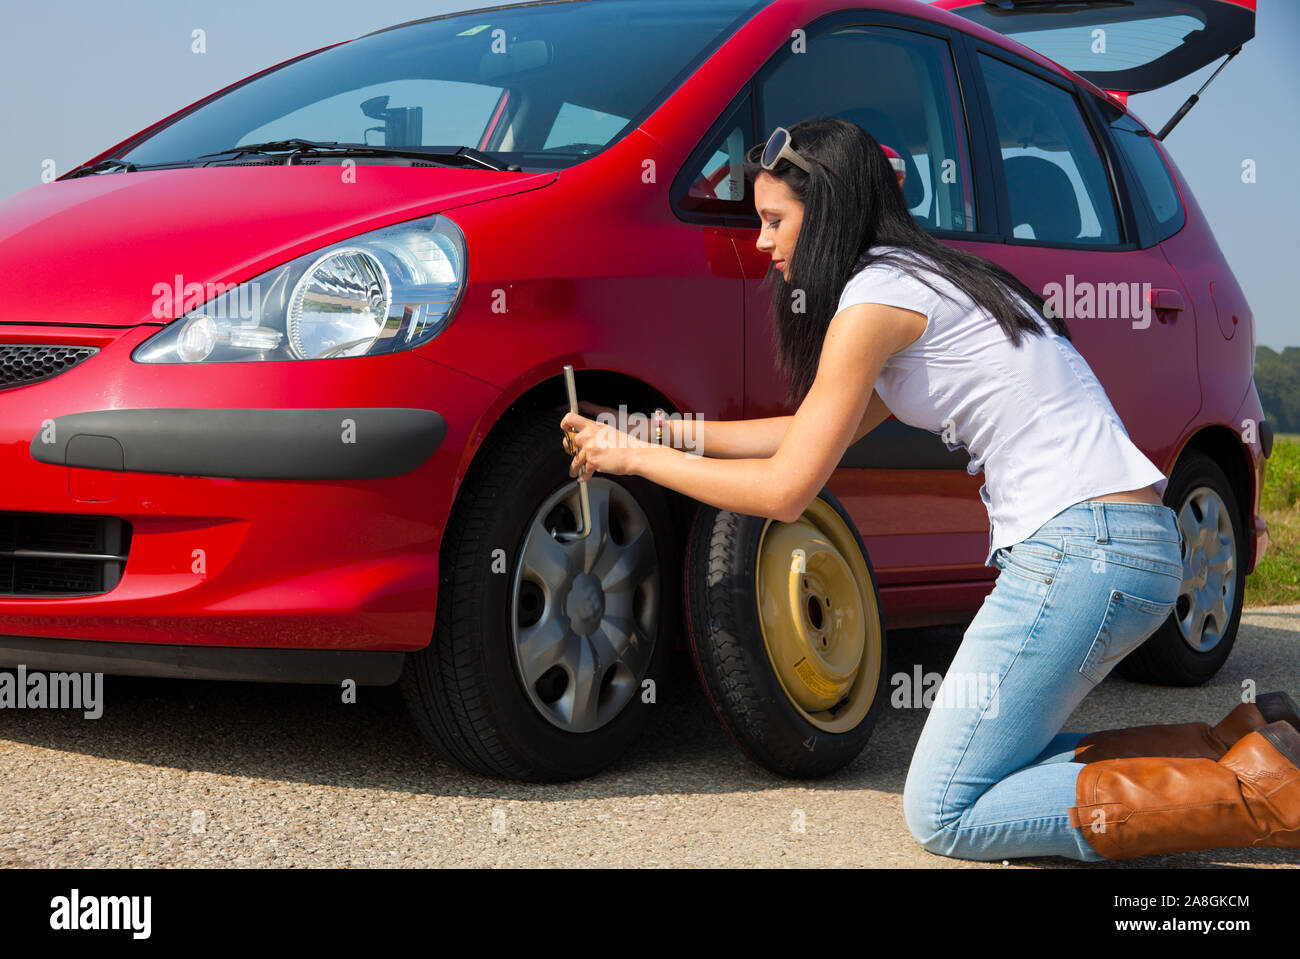 Junge Frau mit einer Reifenpanne am Auto, MR:Yes Stock Photo